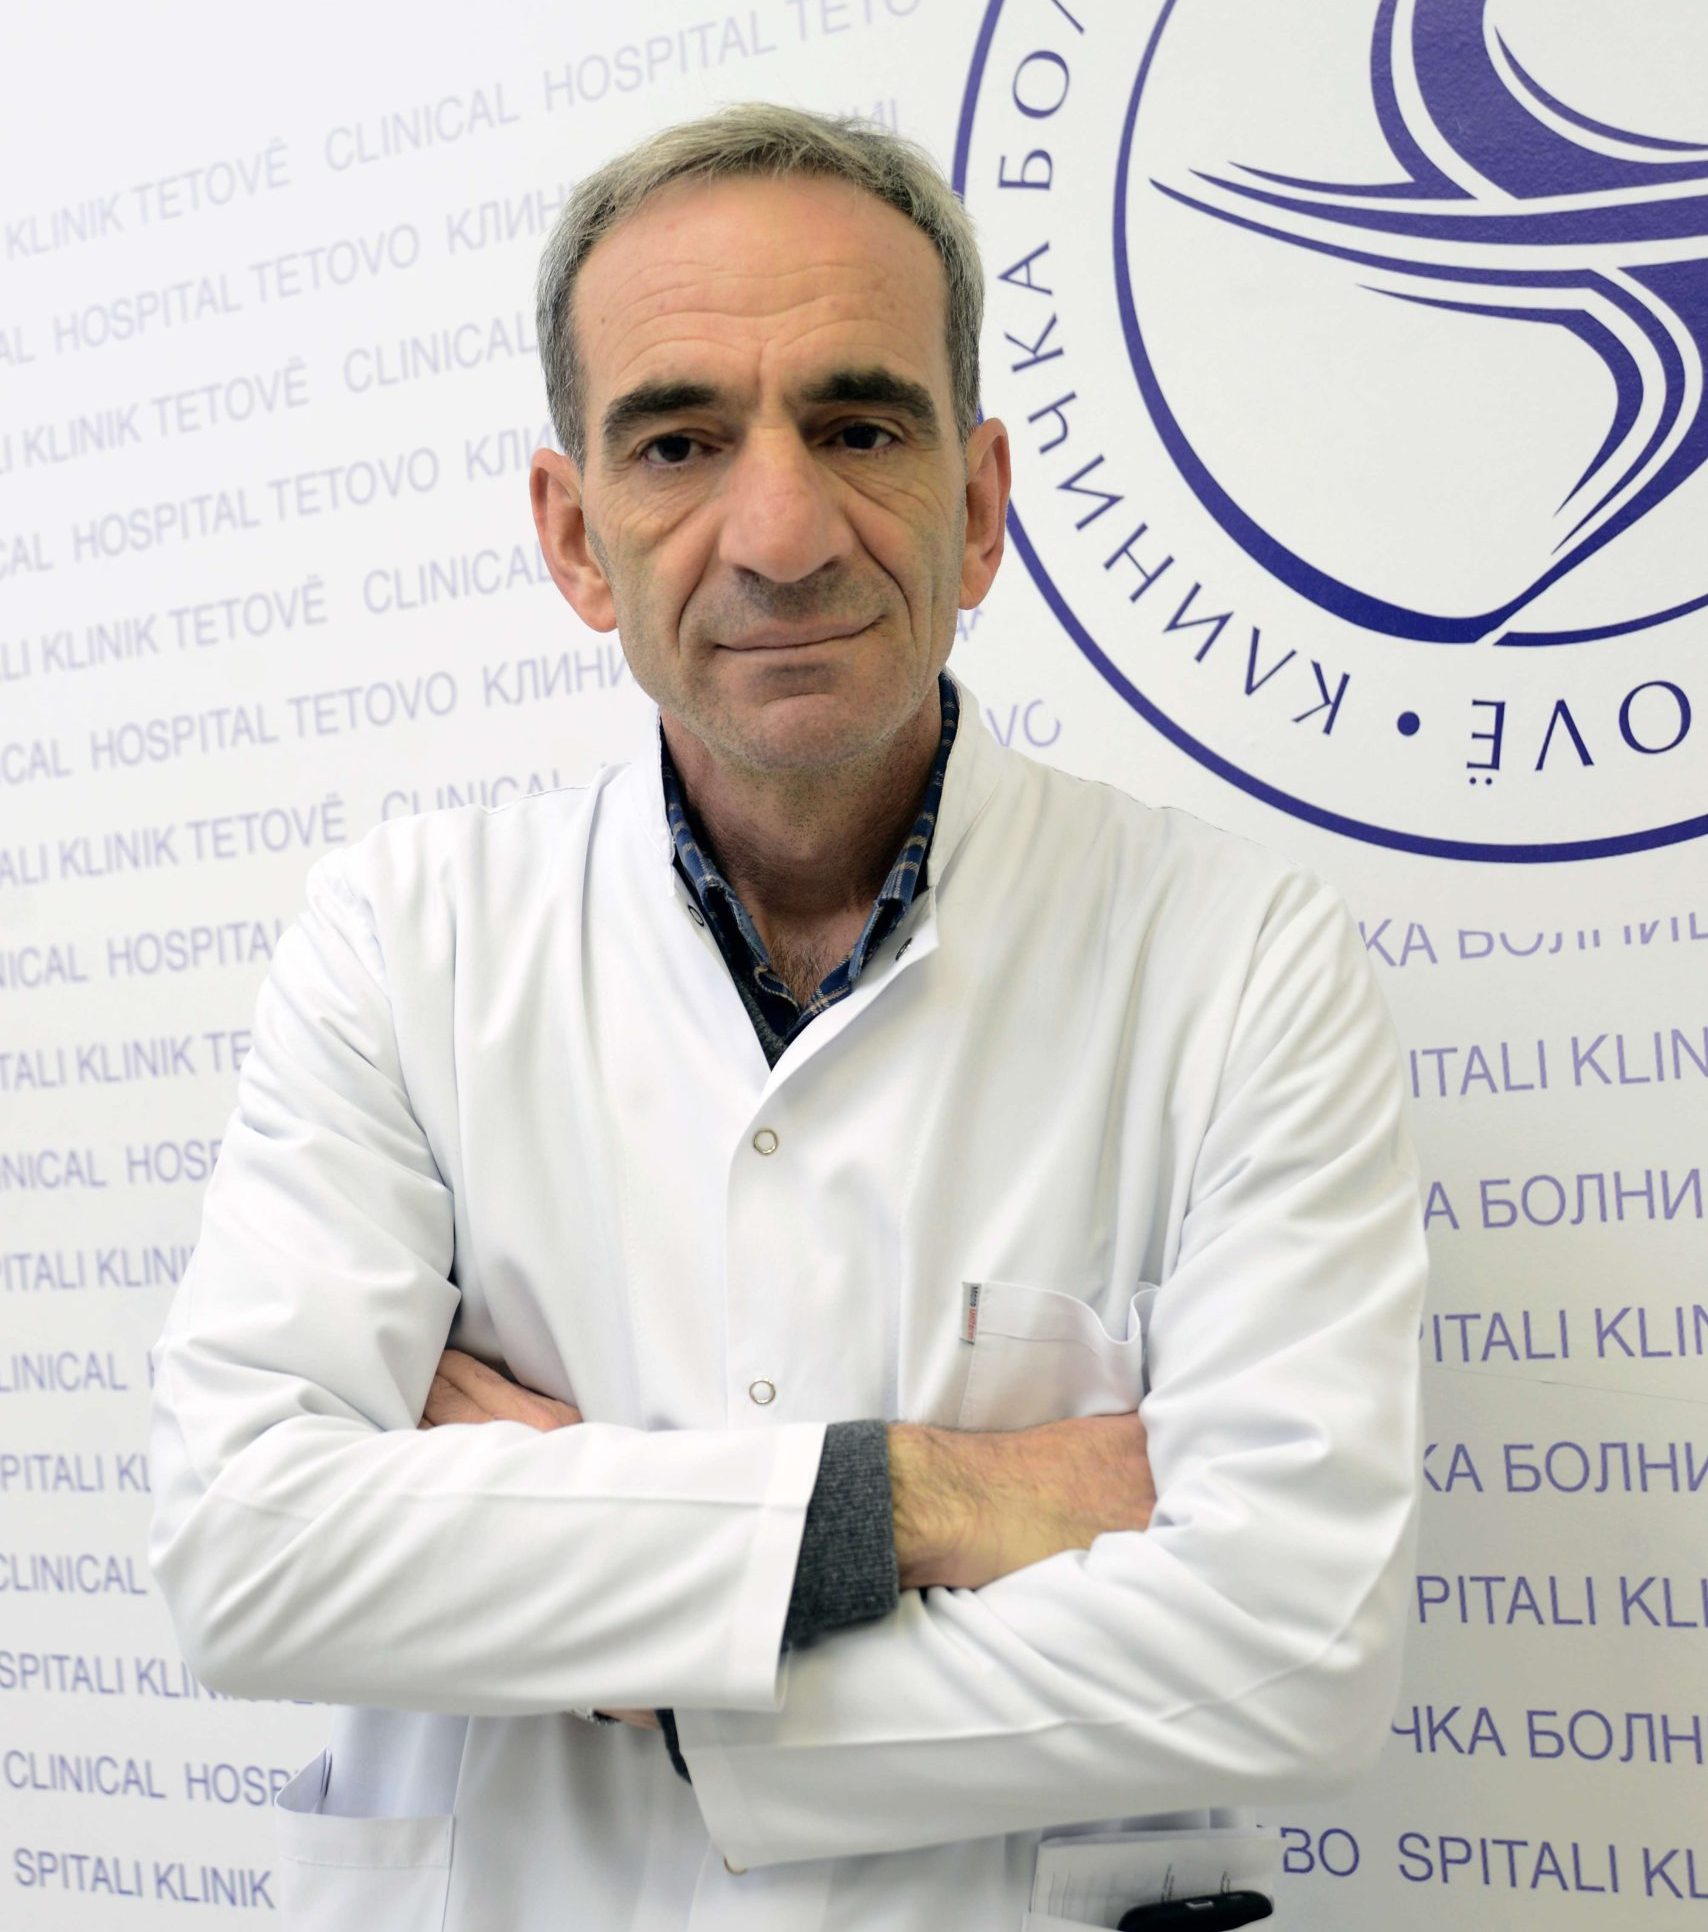 spec. dr. Florim Selimi